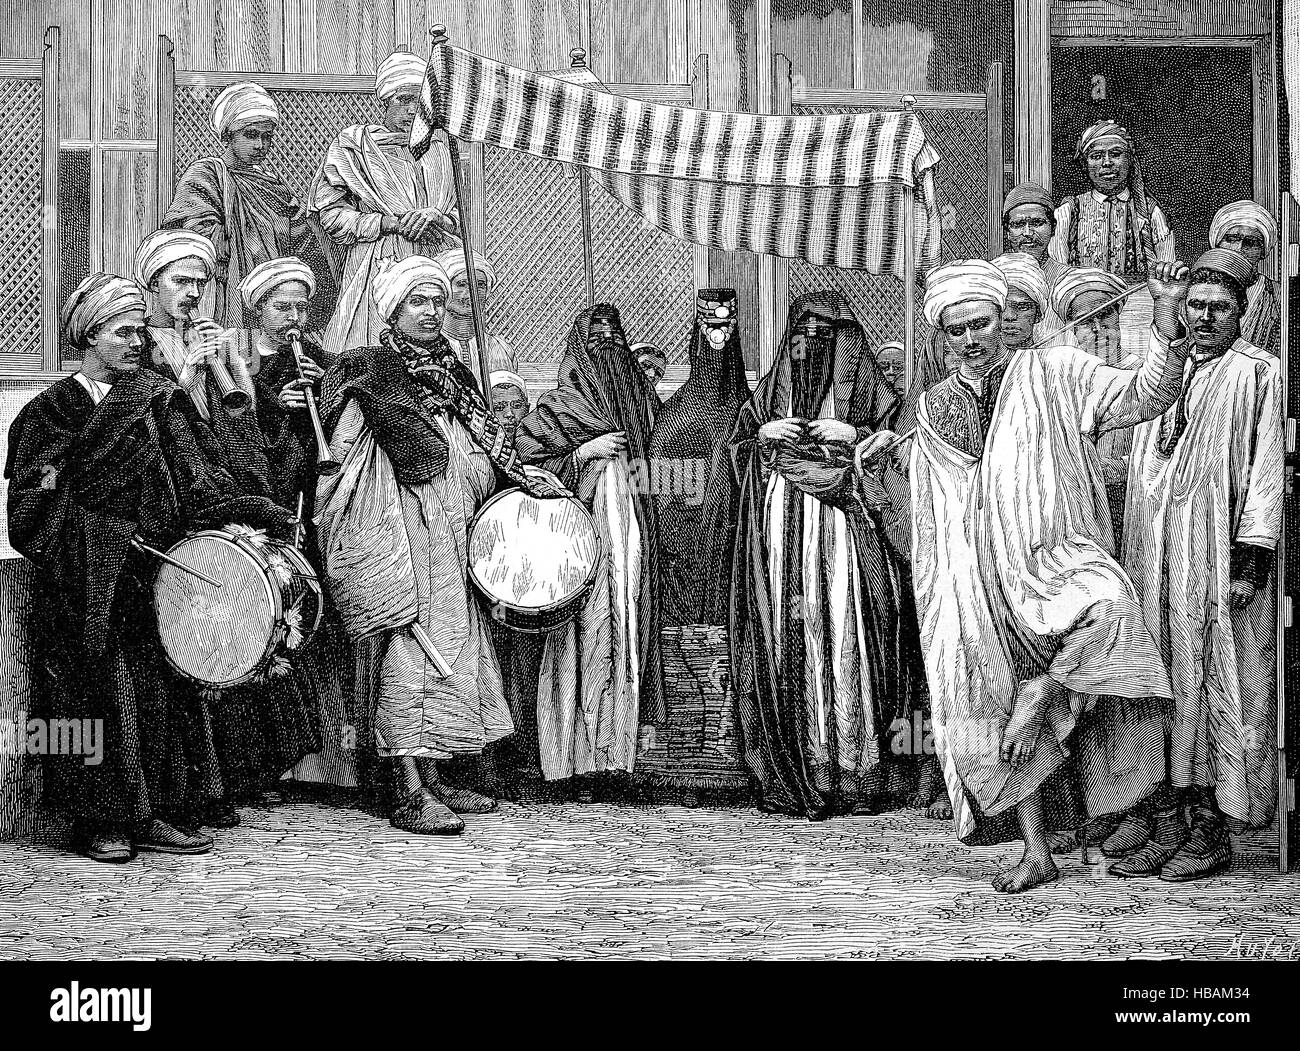 Célébration de mariage au Caire, Égypte, hictorical illustration de 1880 Banque D'Images